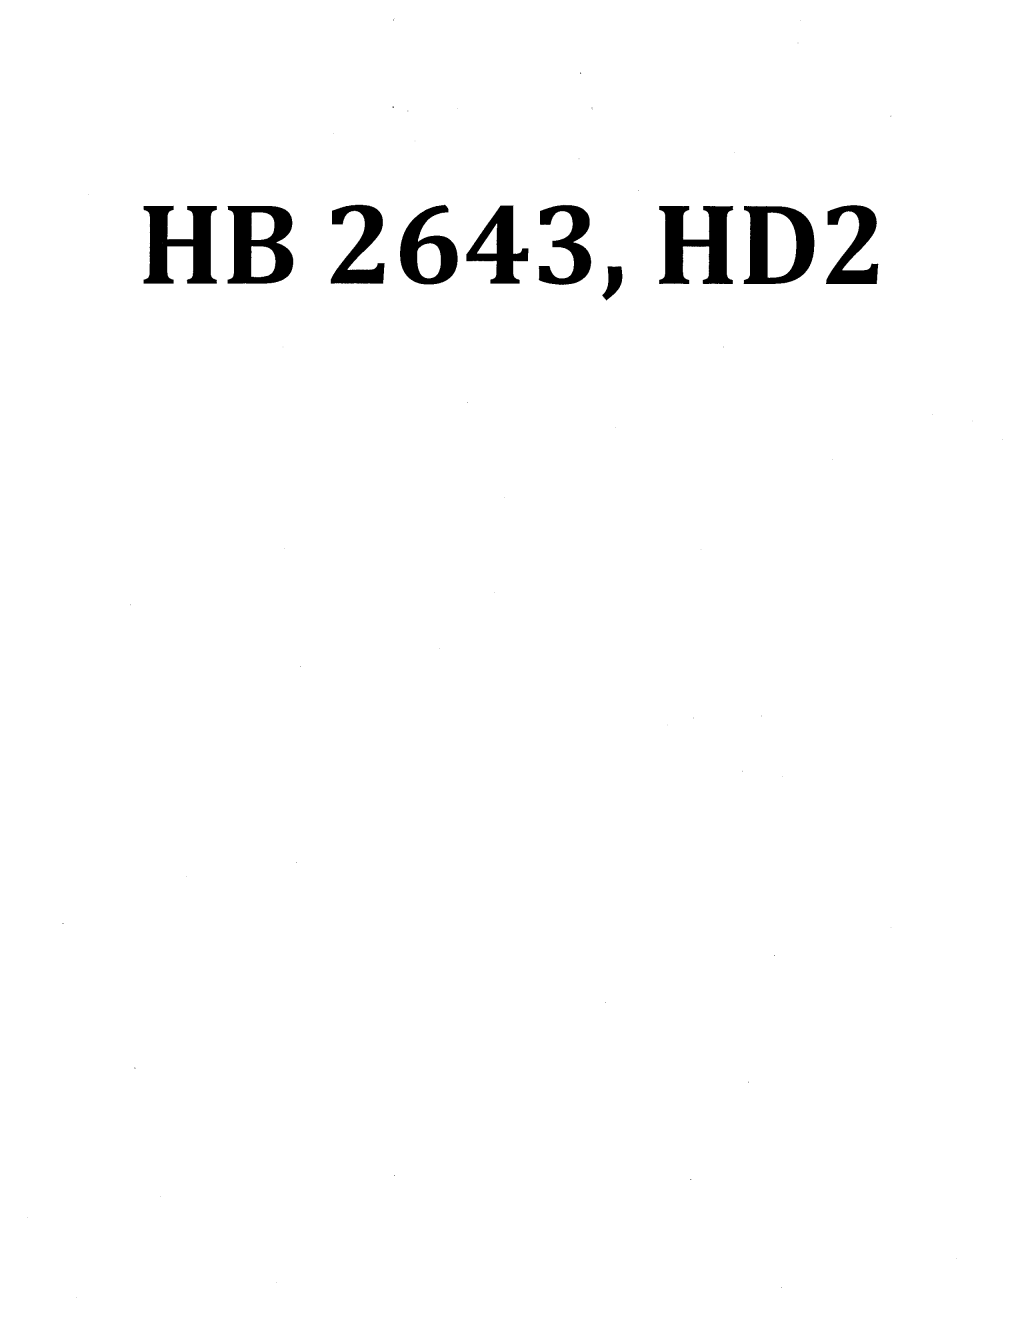 Ub 2643, Ud2 Revised 3-11-10